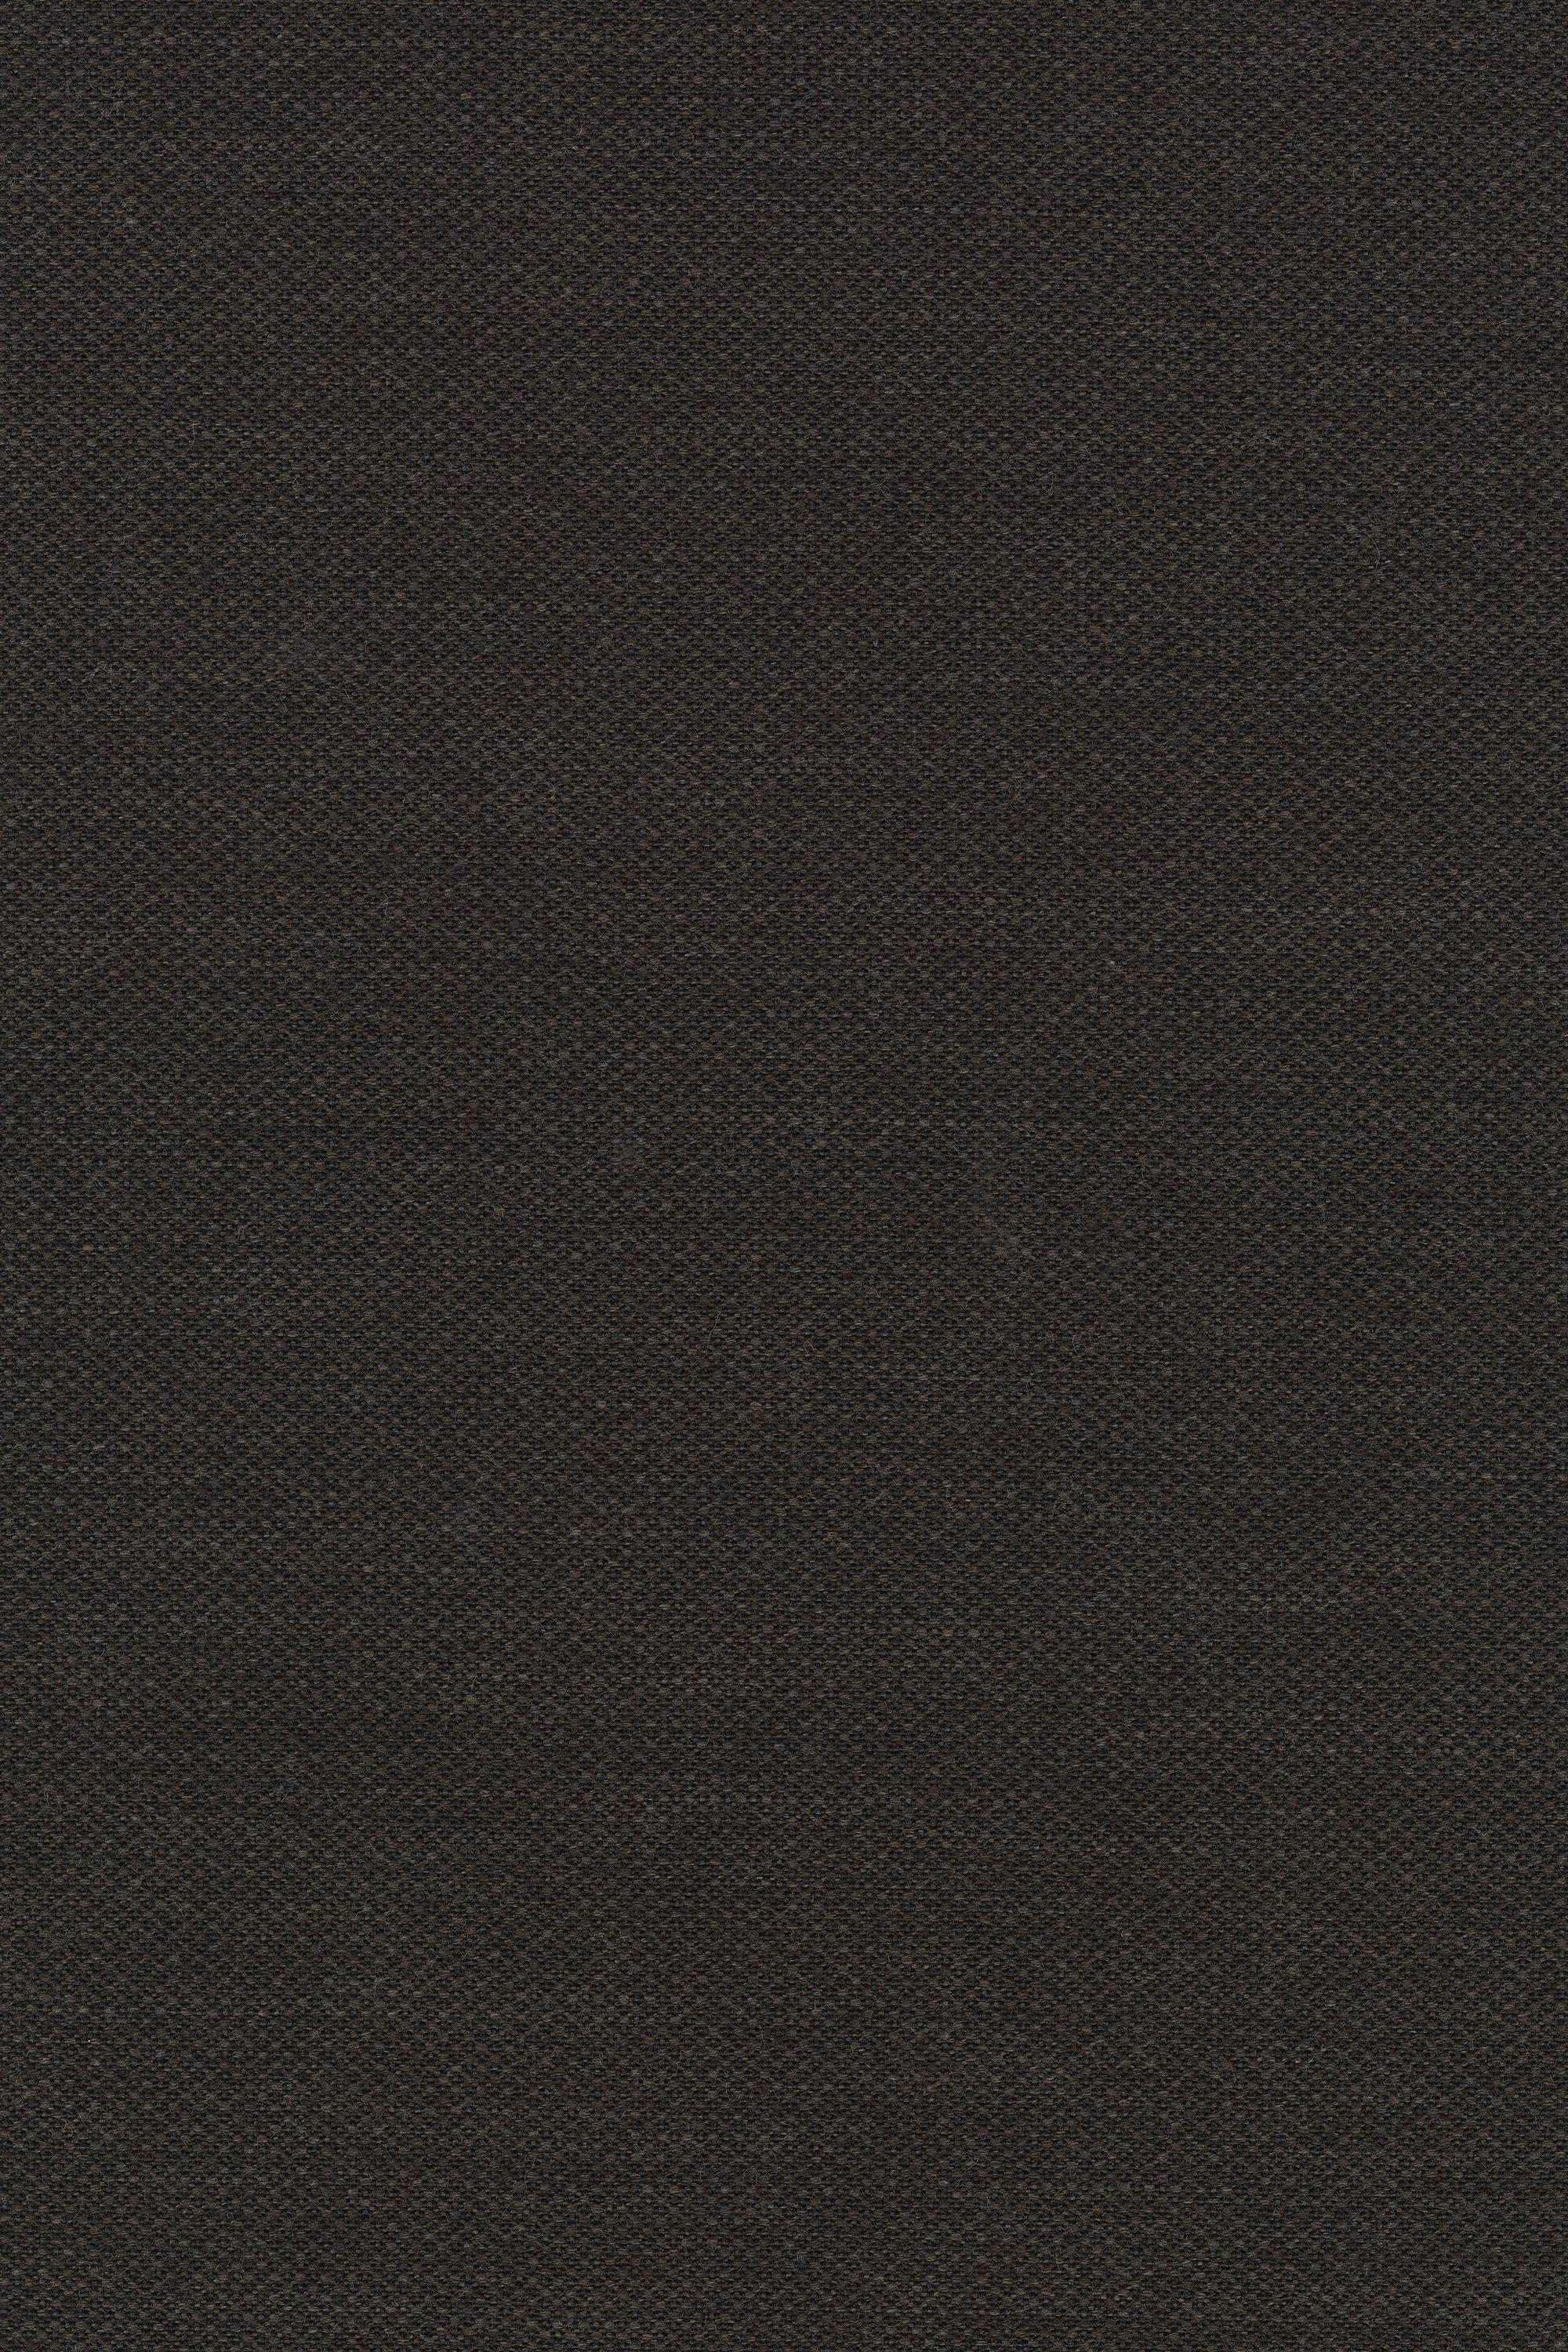 FIORD 2 391 - Upholstery fabrics from Kvadrat | Architonic